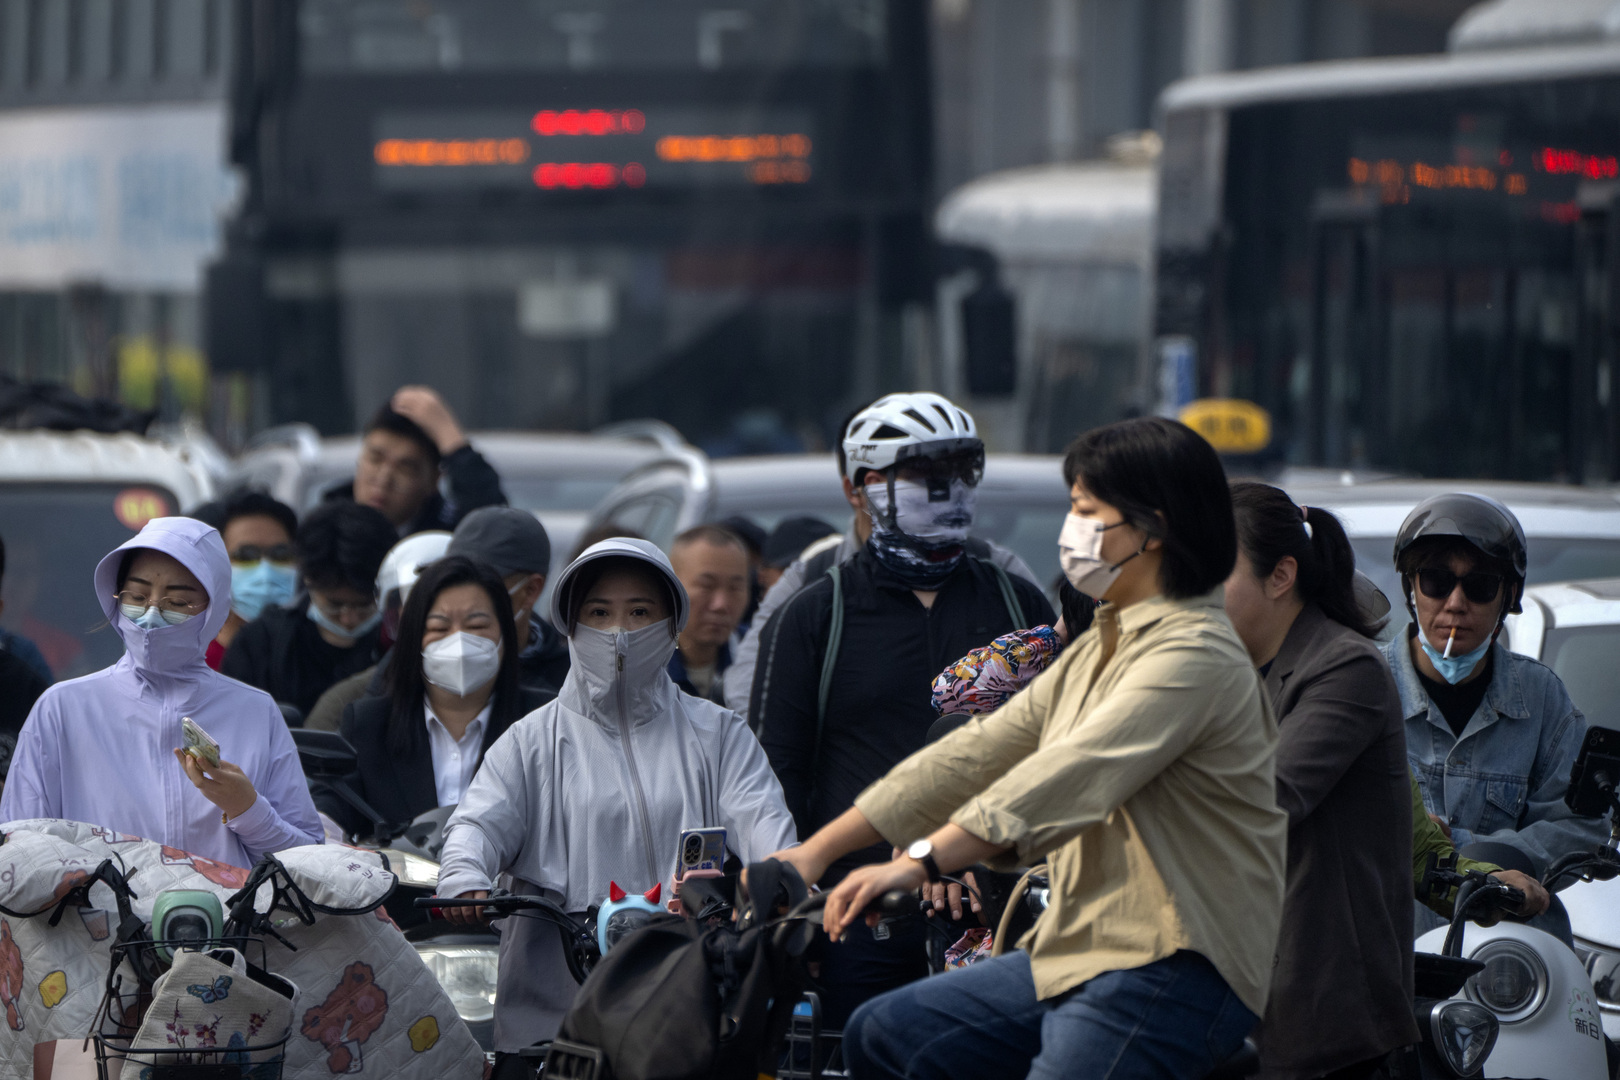 جمهوريون يدعون بايدن للحد من الرحلات بين الولايات المتحدة والصين بعد تفشي فيروس